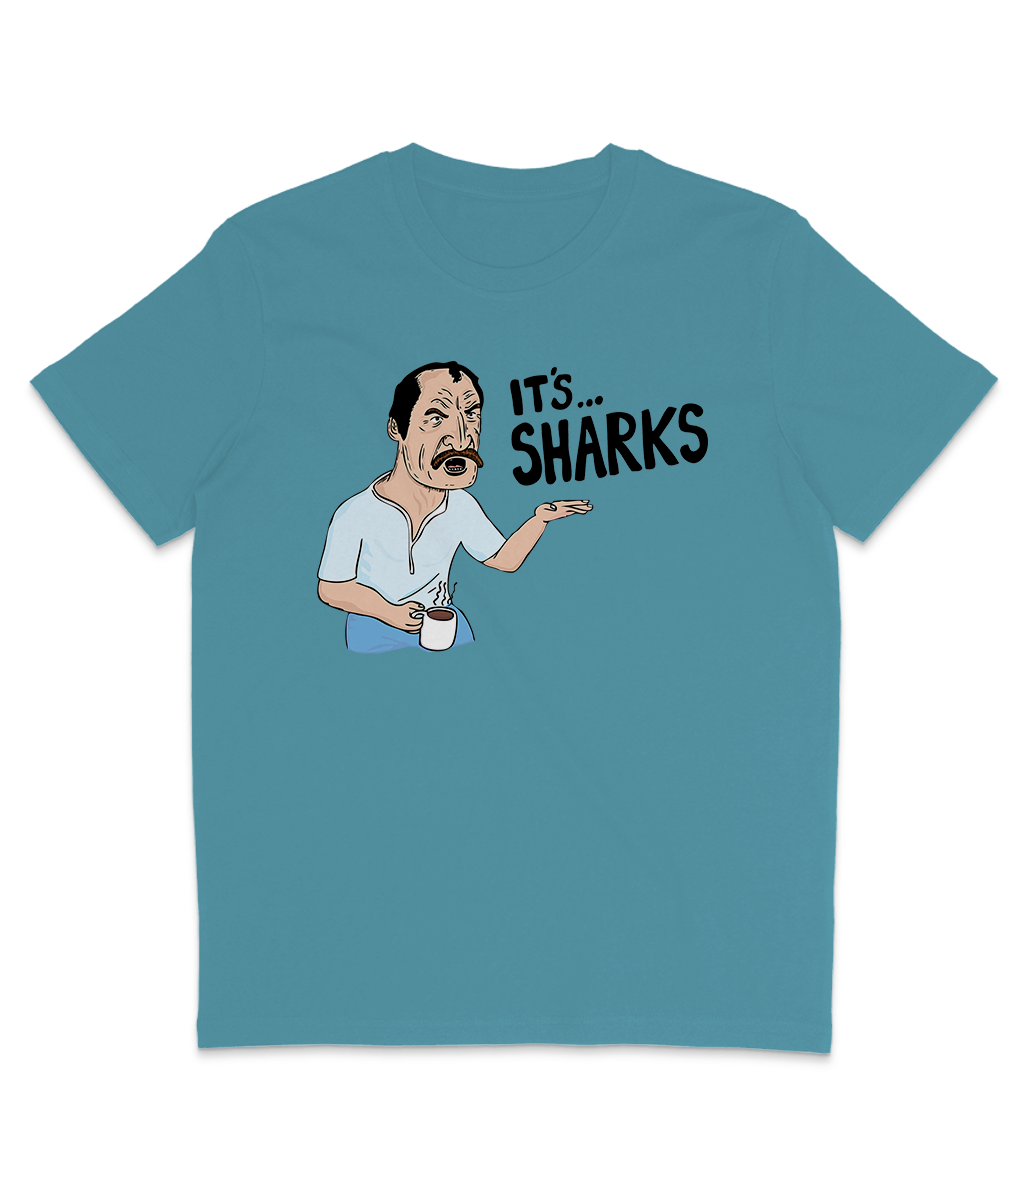 Paul Sykes - IT'S...SHARKS - Cartoon